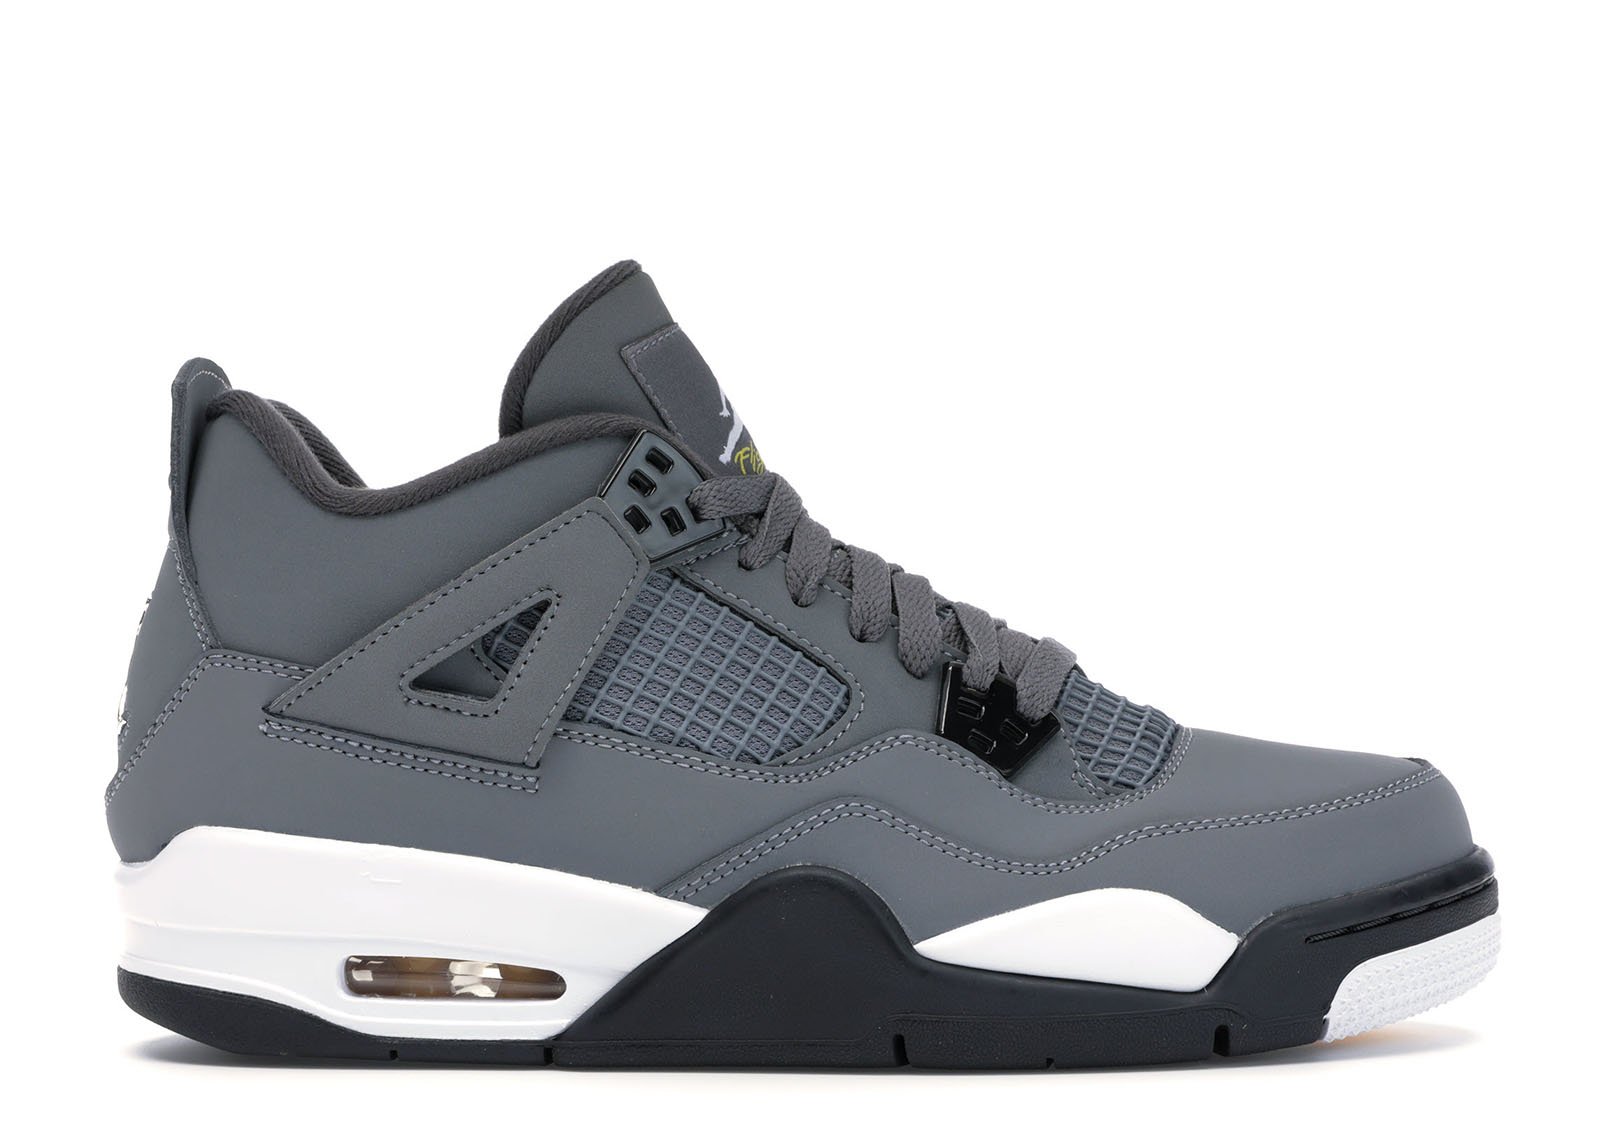 sneakers Jordan 4 Retro Cool Grey (2019) (GS)